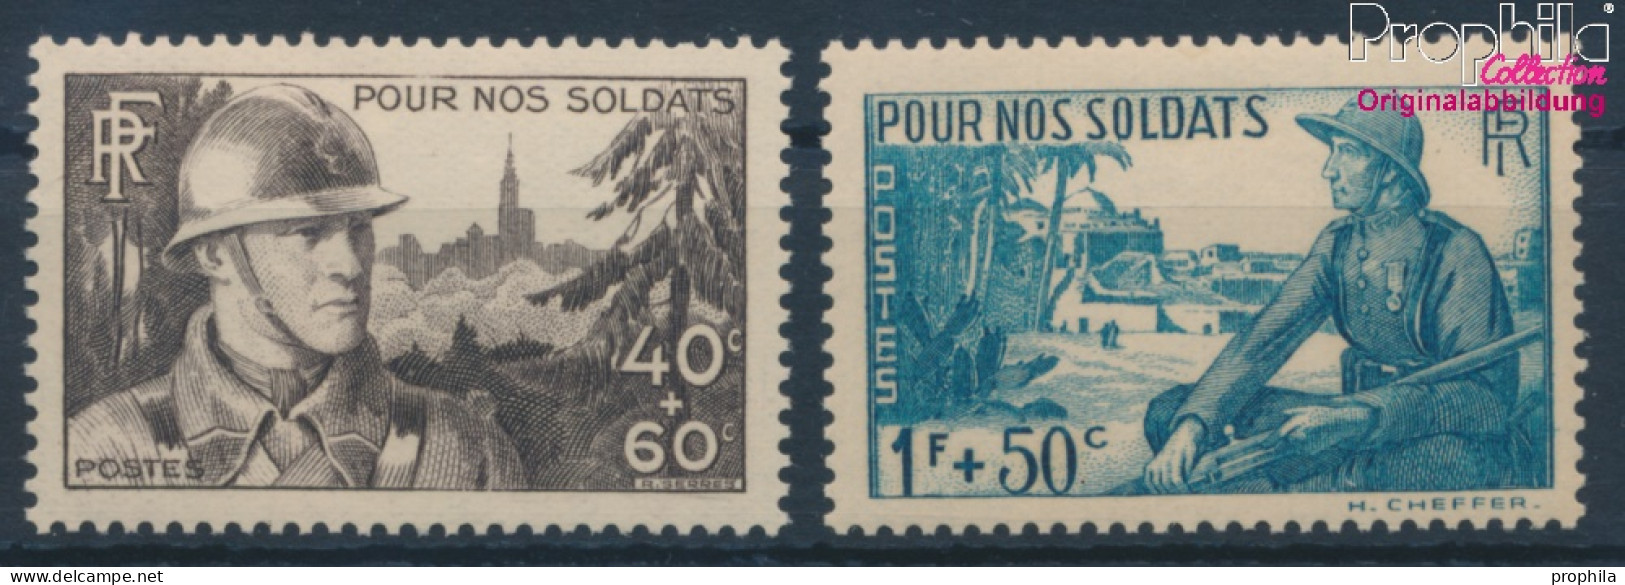 Frankreich 464-465 (kompl.Ausg.) Postfrisch 1940 Unsere Soldaten (10354726 - Unused Stamps